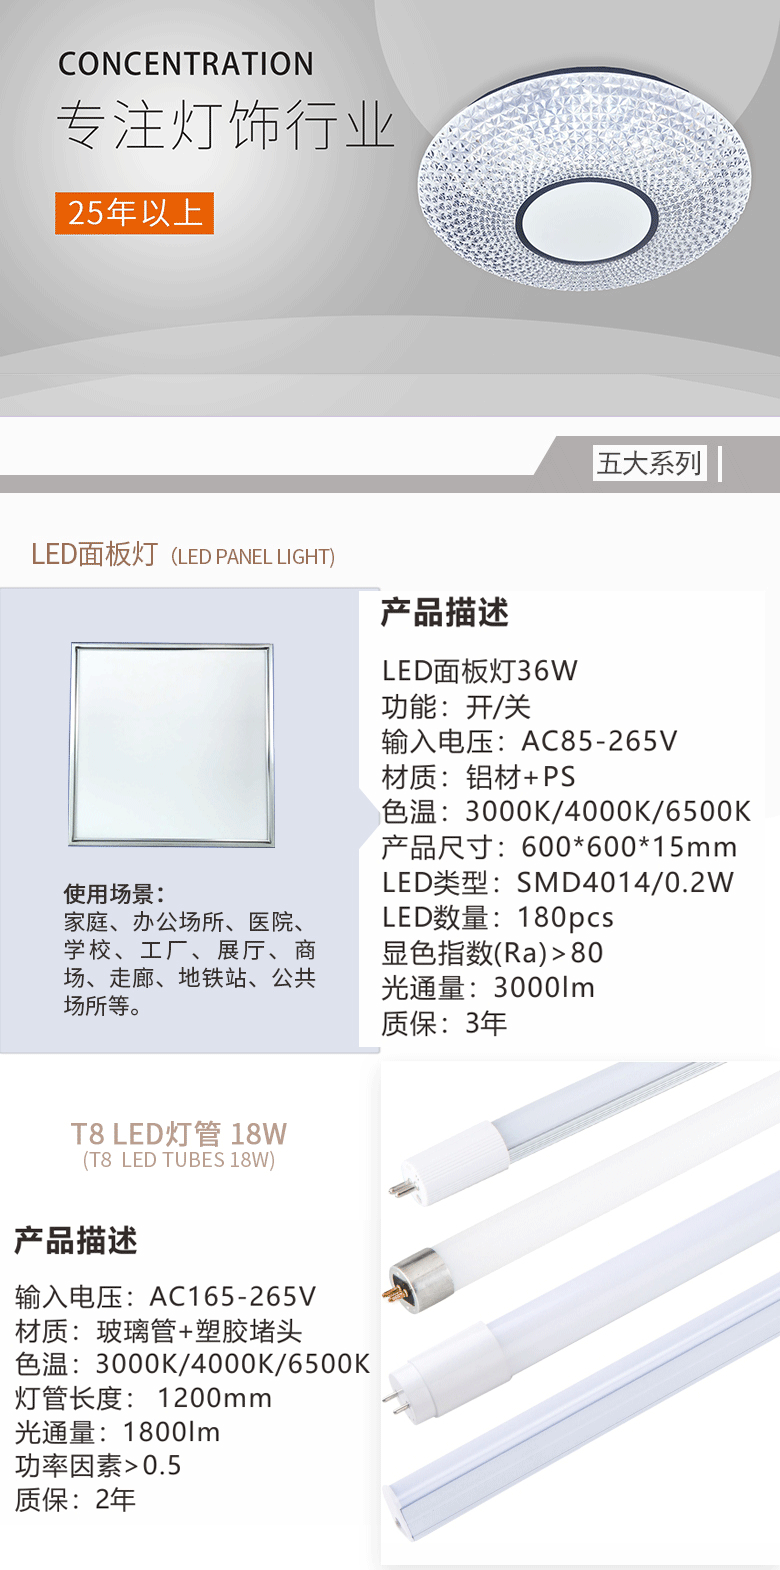 T8 LED灯管产品简介